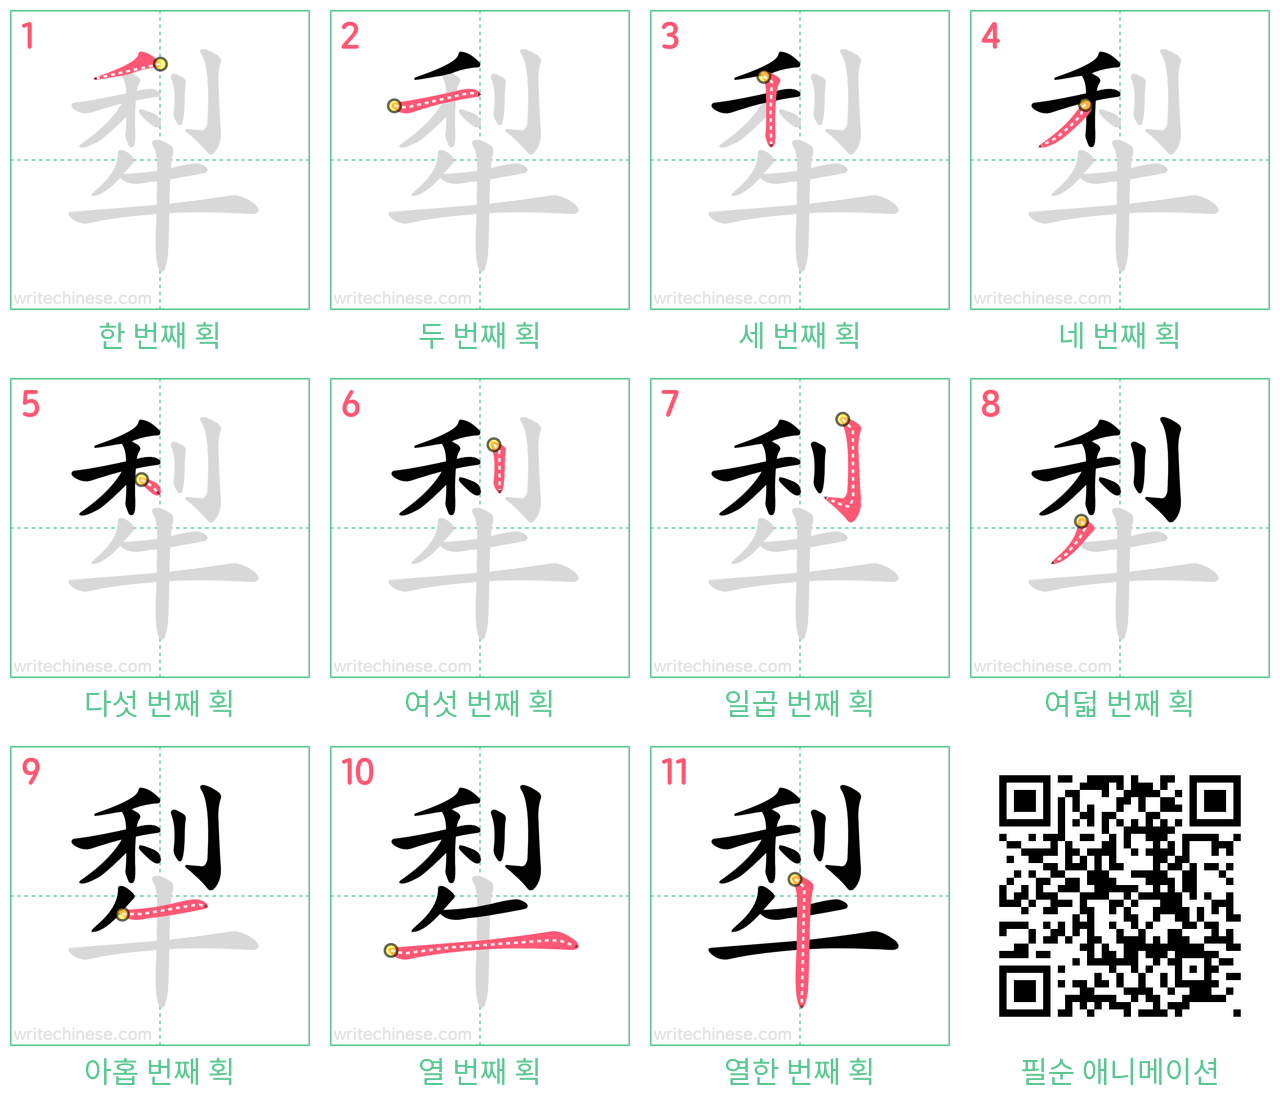 犁 step-by-step stroke order diagrams